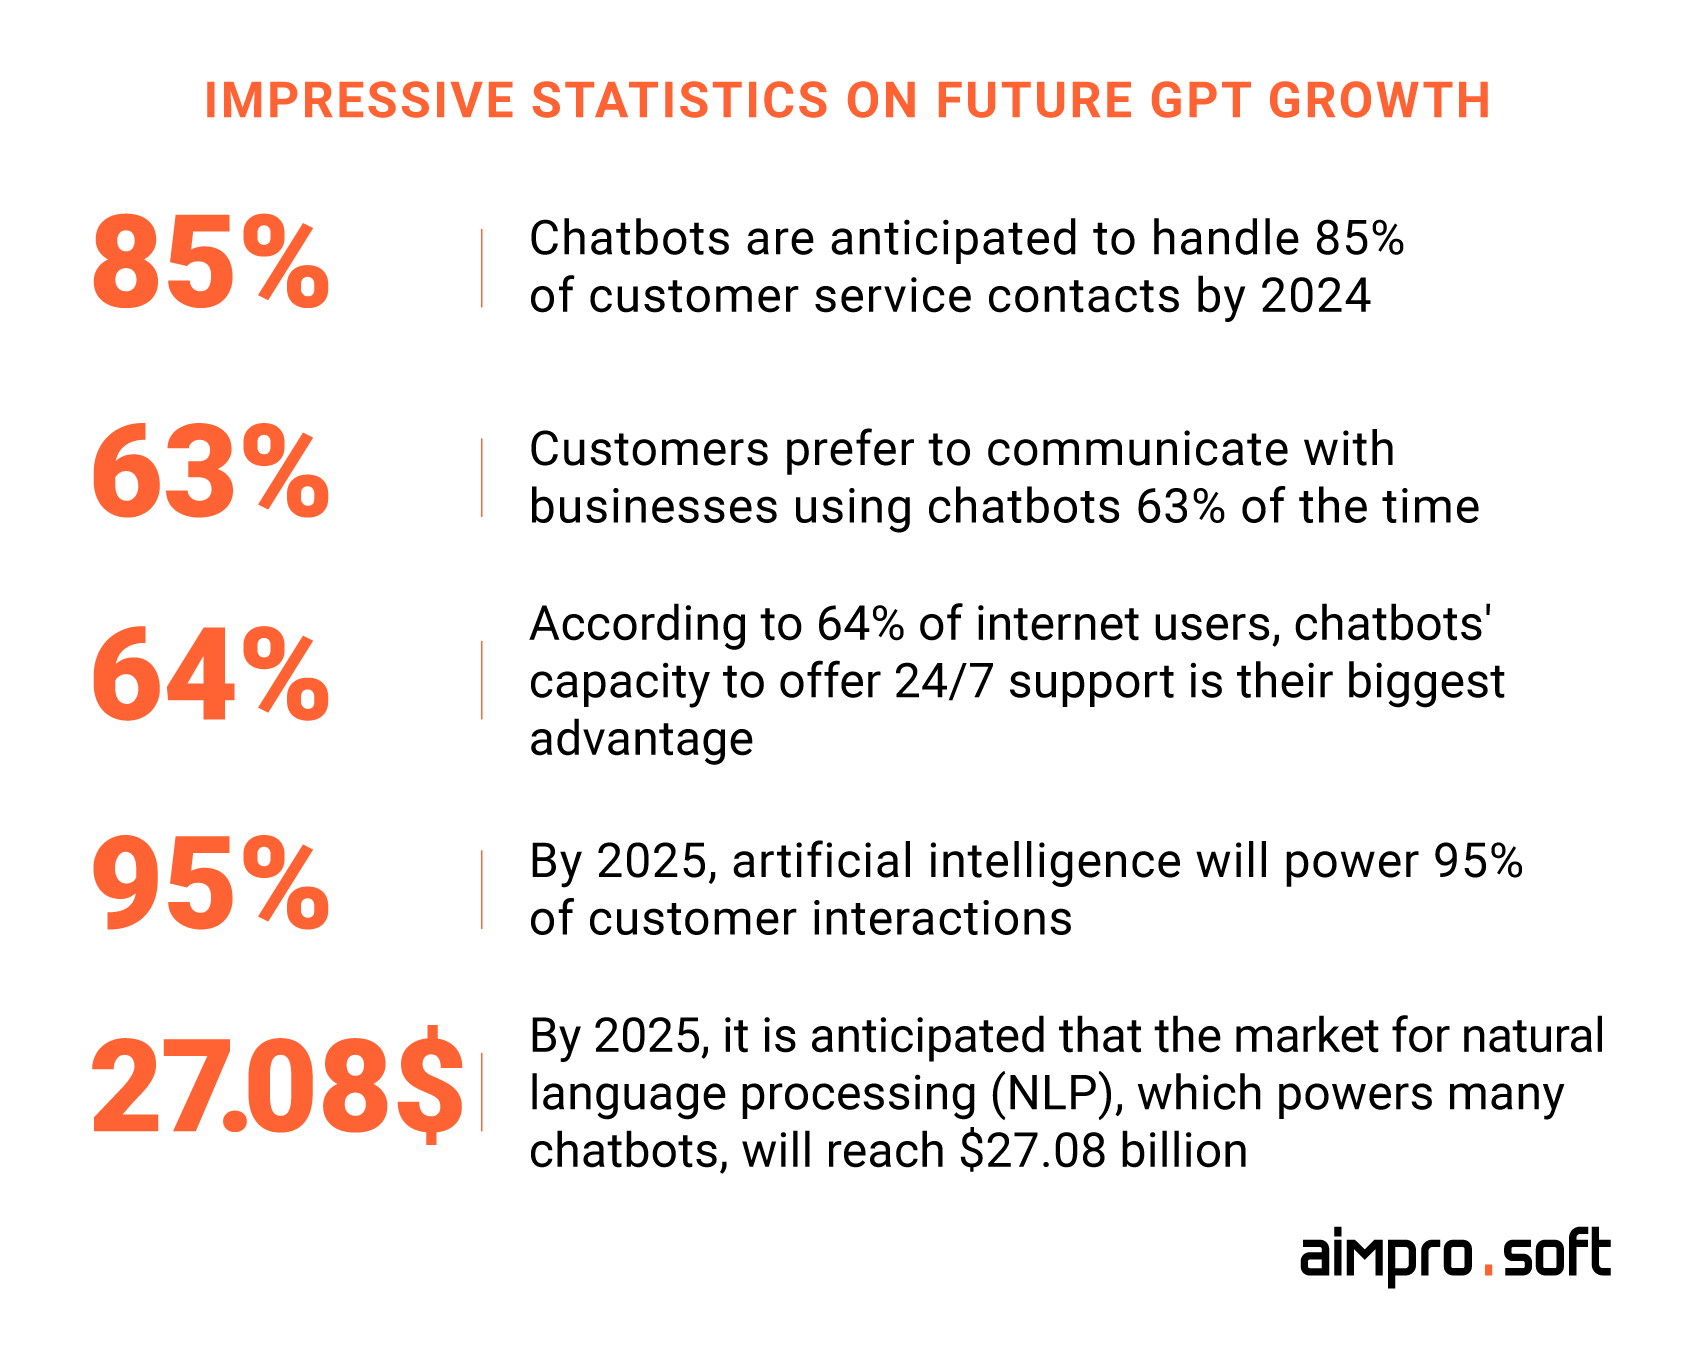 GPT growth statistics